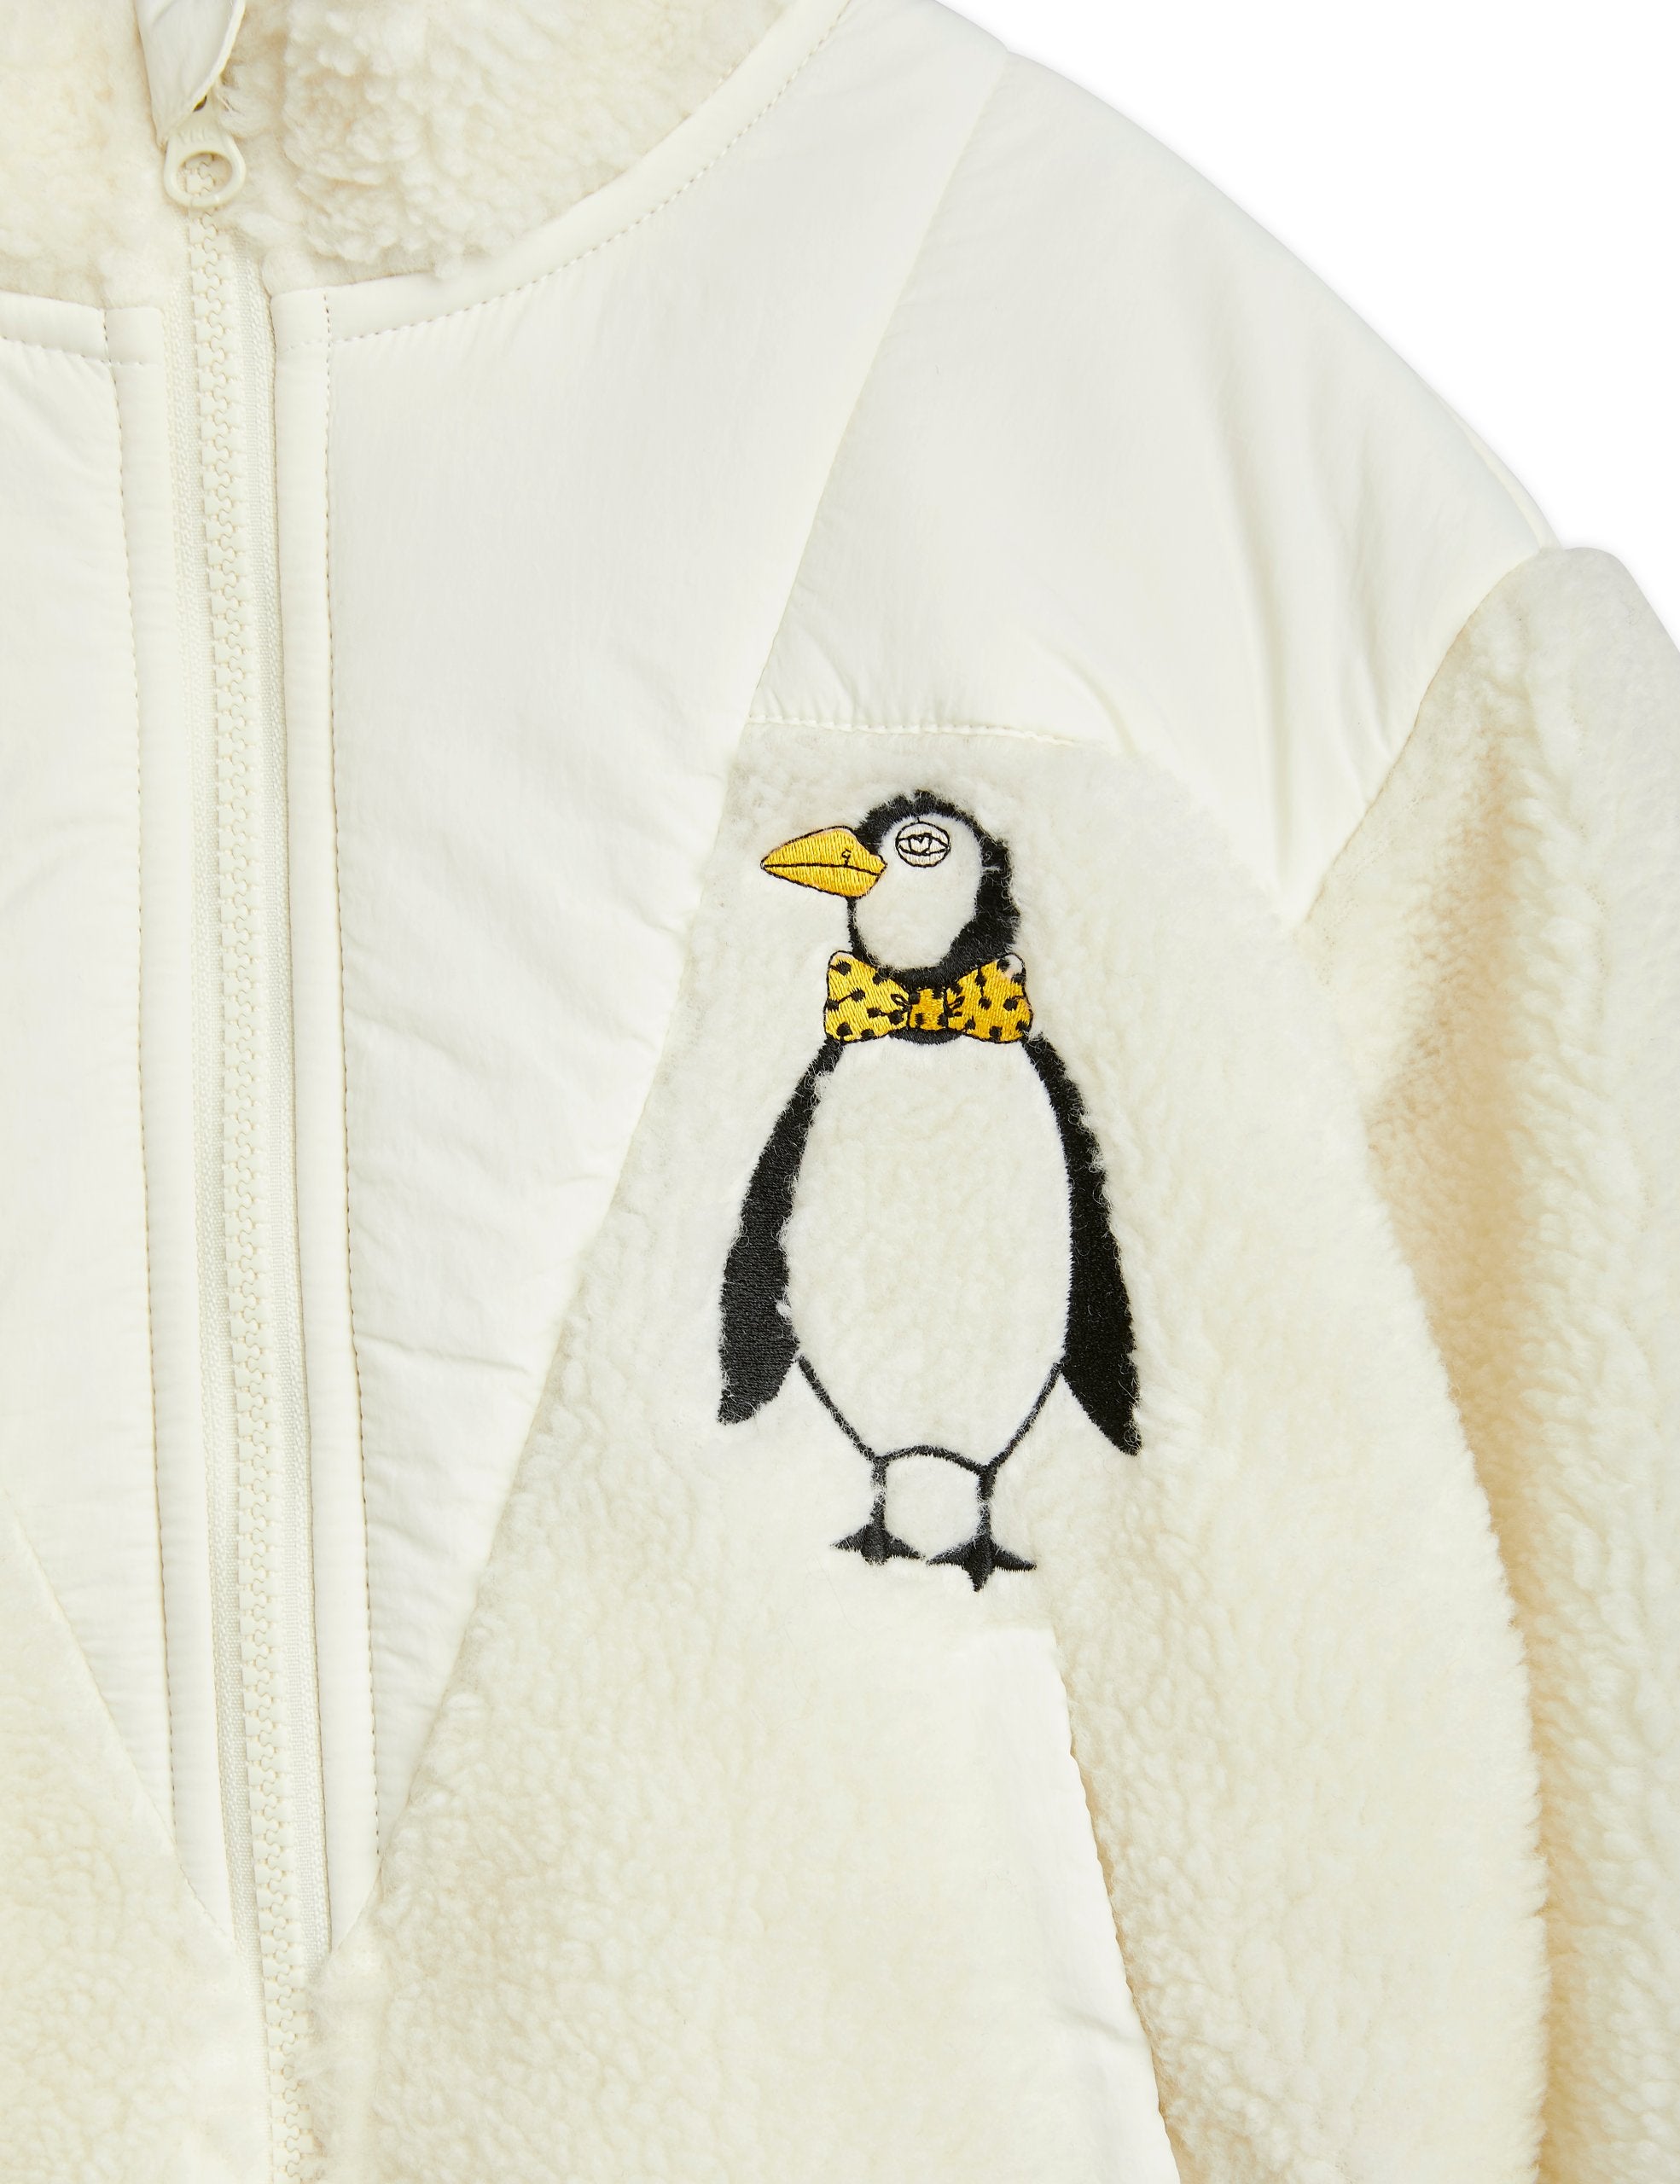 Mini Rodini Penguin Pile Zip Cardigan - White